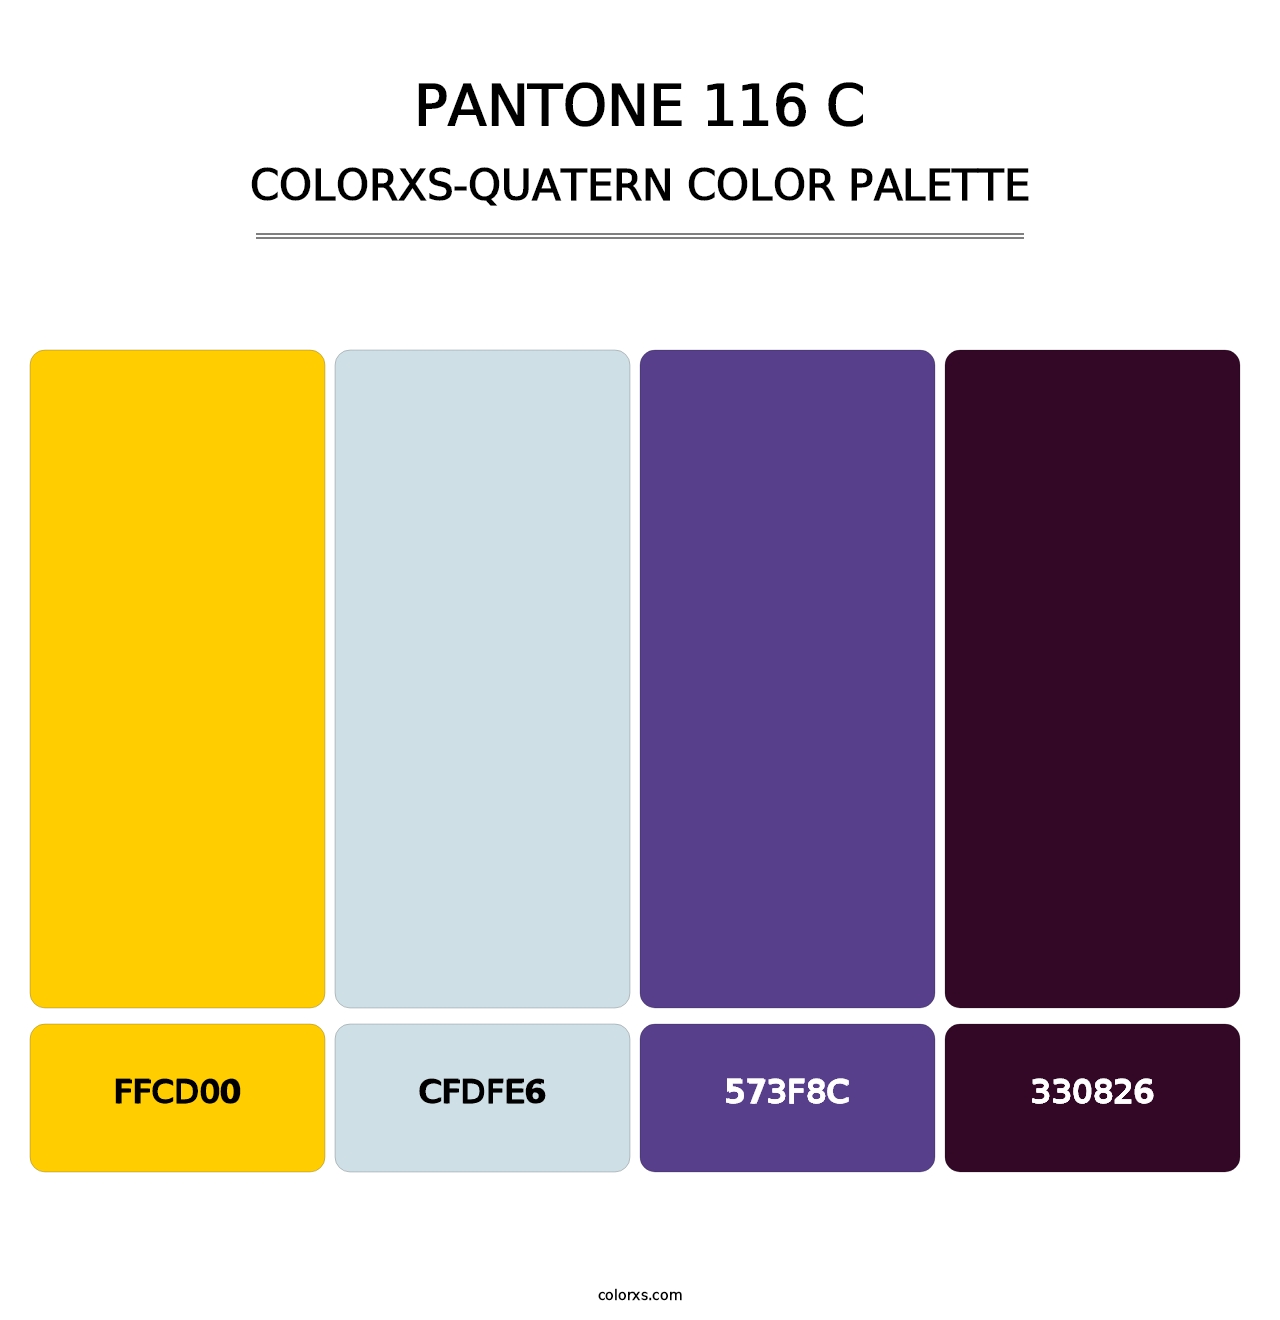 PANTONE 116 C - Colorxs Quatern Palette